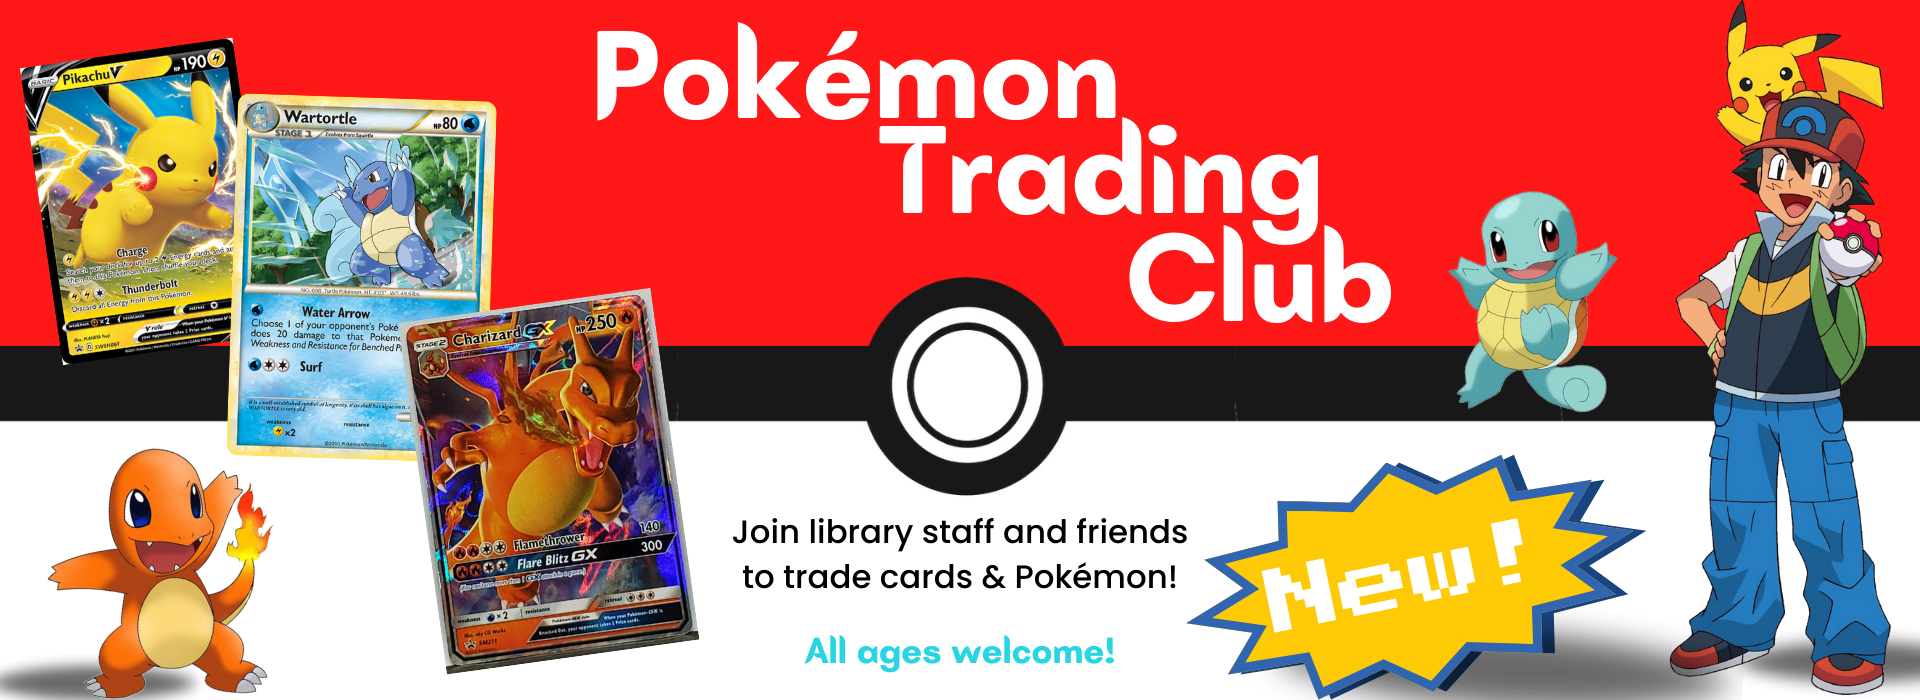 Pokemon Trading Club Thursday, April 25th at 4pm